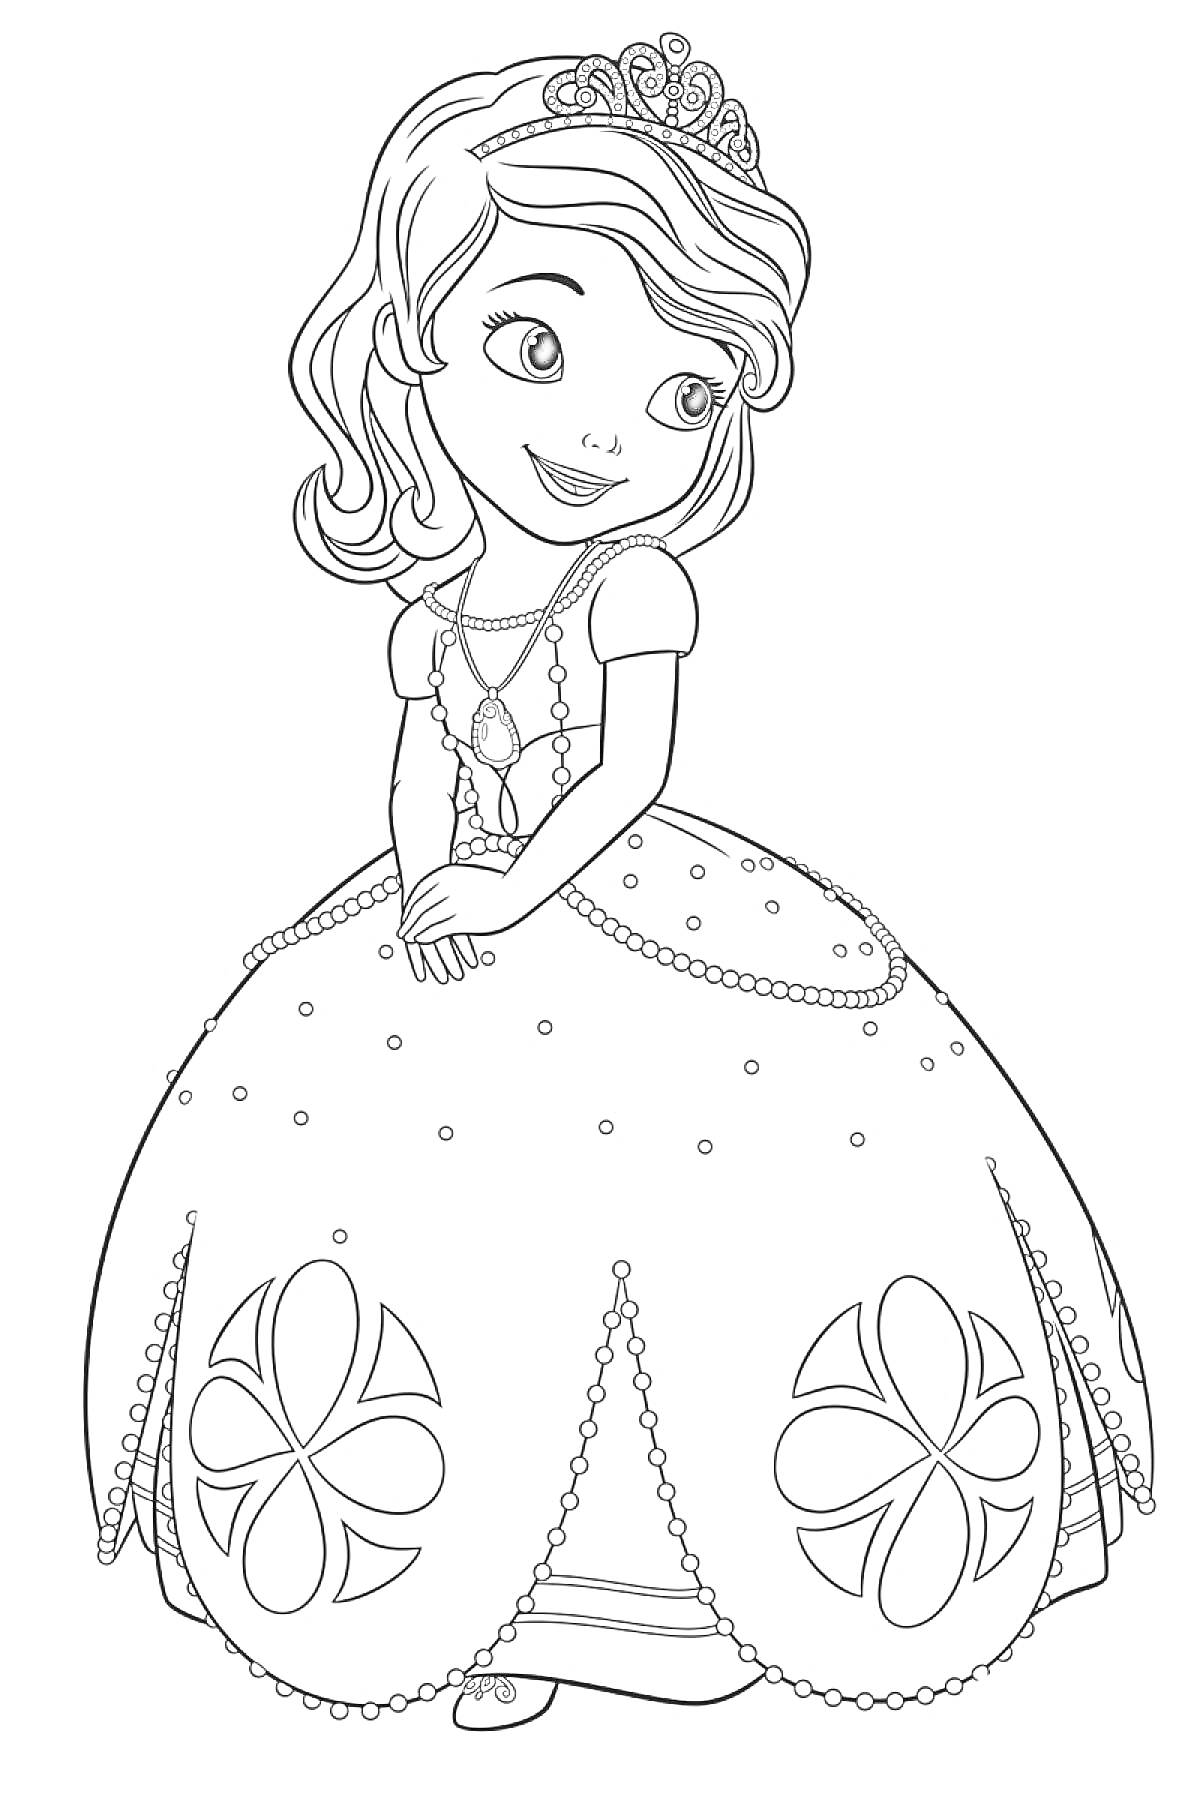 Раскраска Принцесса София в короне и пышном платье